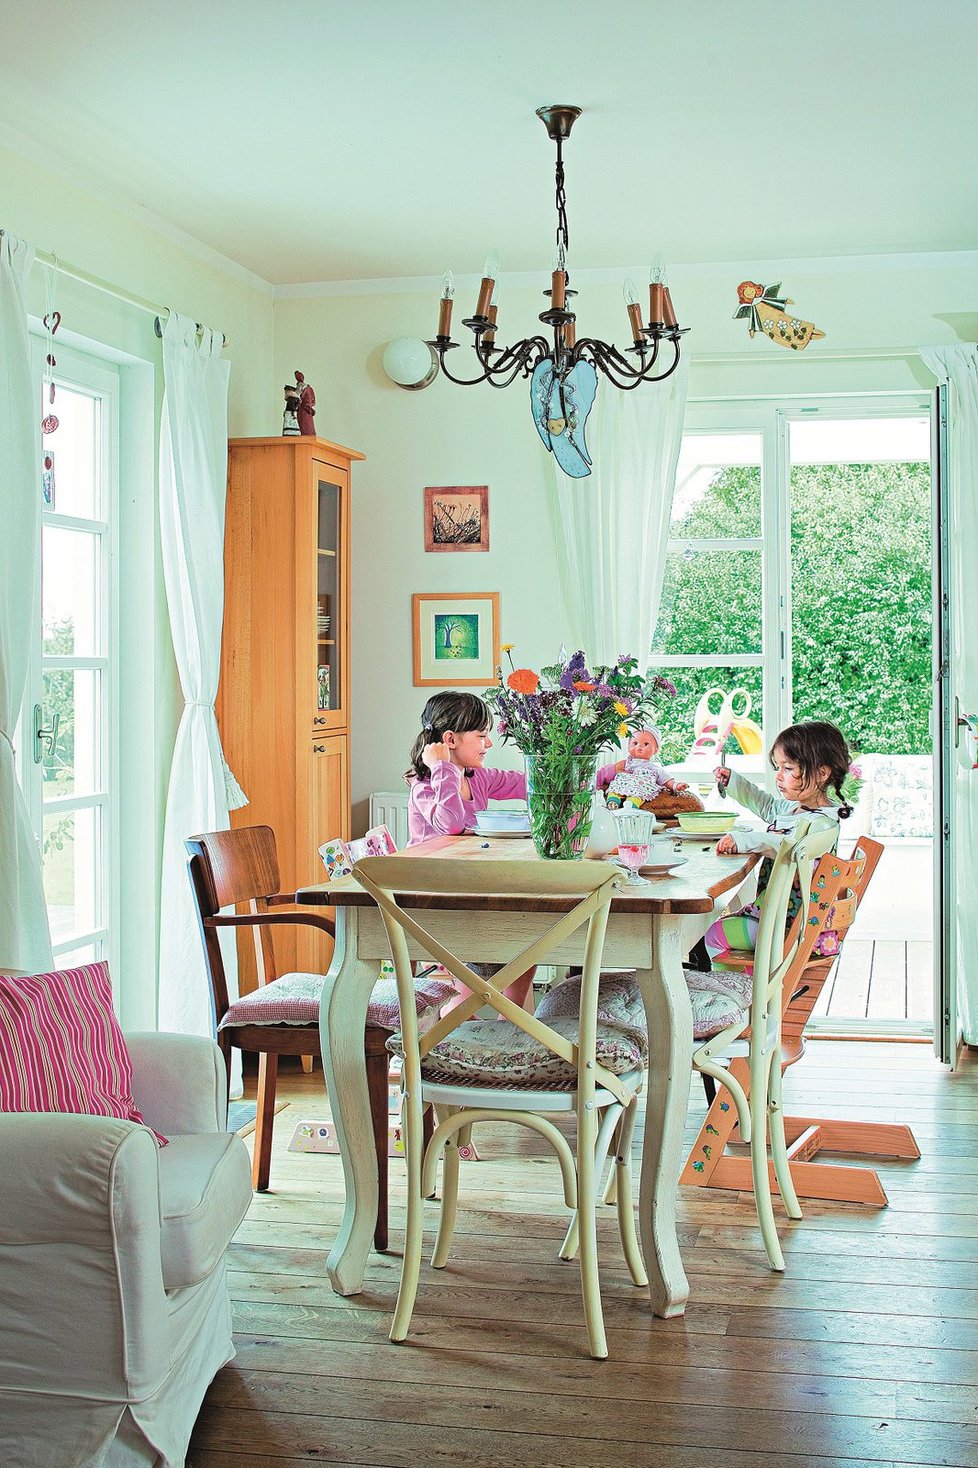 Francouzská romantika domu s tradičními materiály sluší a interiér podtrhuje.